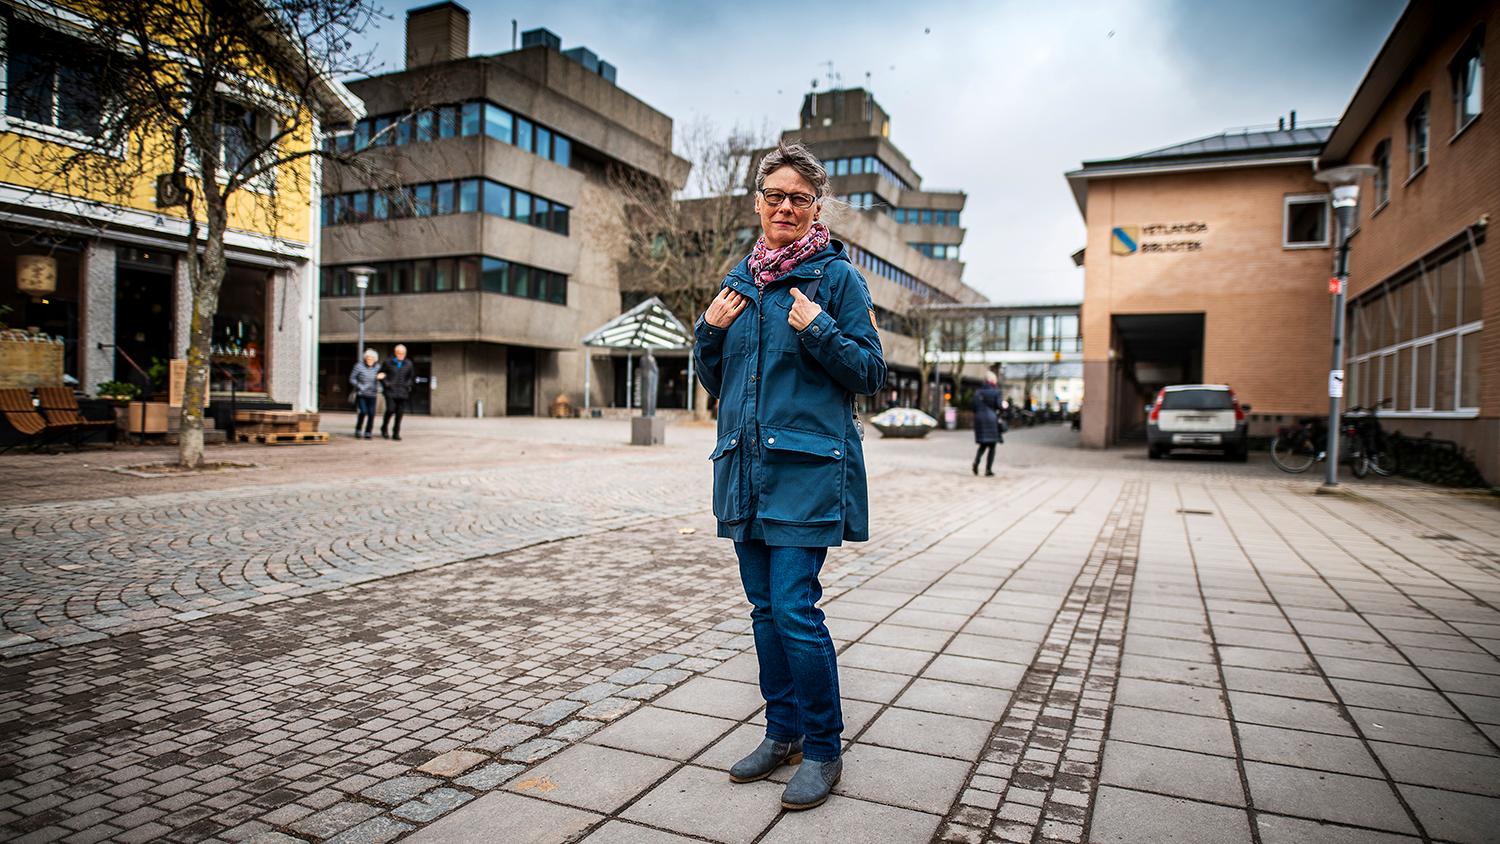 Inger Andersson försökte stoppa nynazister som demonstrerade i Vetlanda. Hon blev omkullknuffad och fick en hel del skador. Inger är fotograferad på platsen där incidenten inträffade.